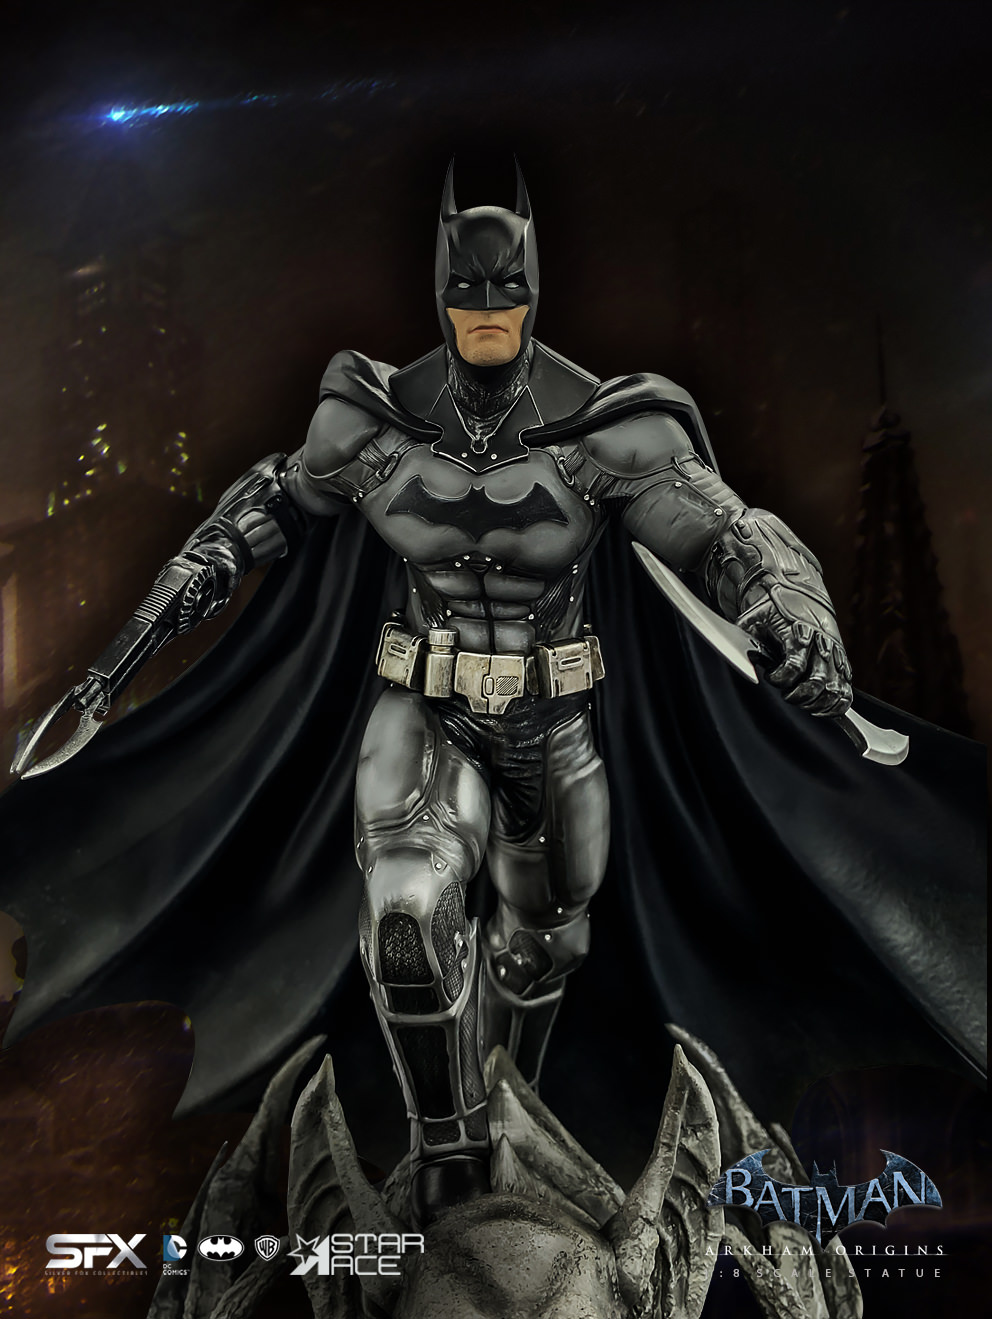 Batman Arkham Origins Exclusive Edition (Prototype Shown) View 6